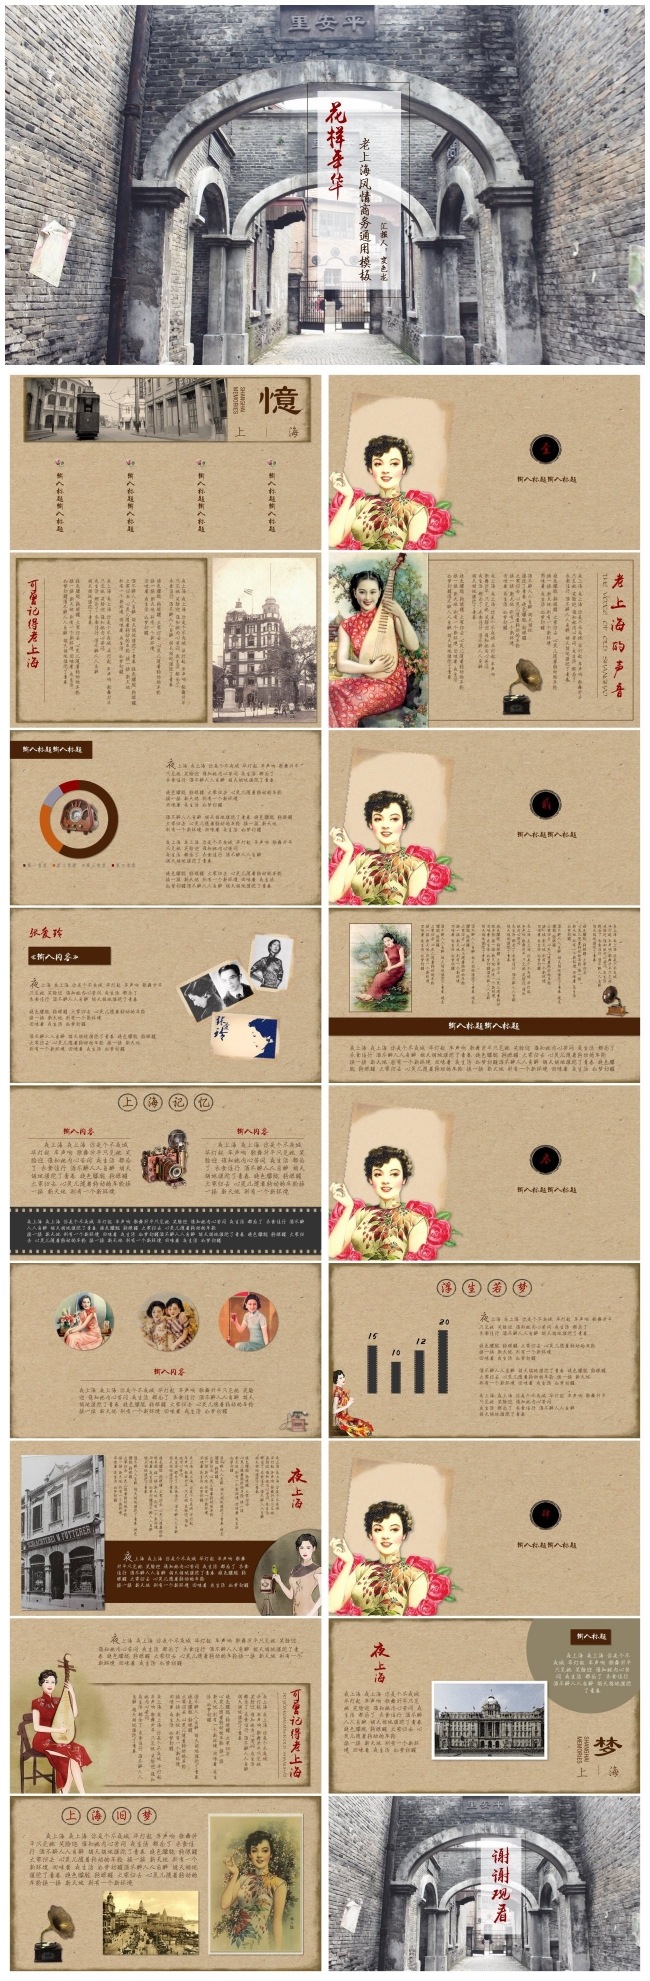 【花样年华】复古老上海风情商务通用模板 工作汇报 年终总结